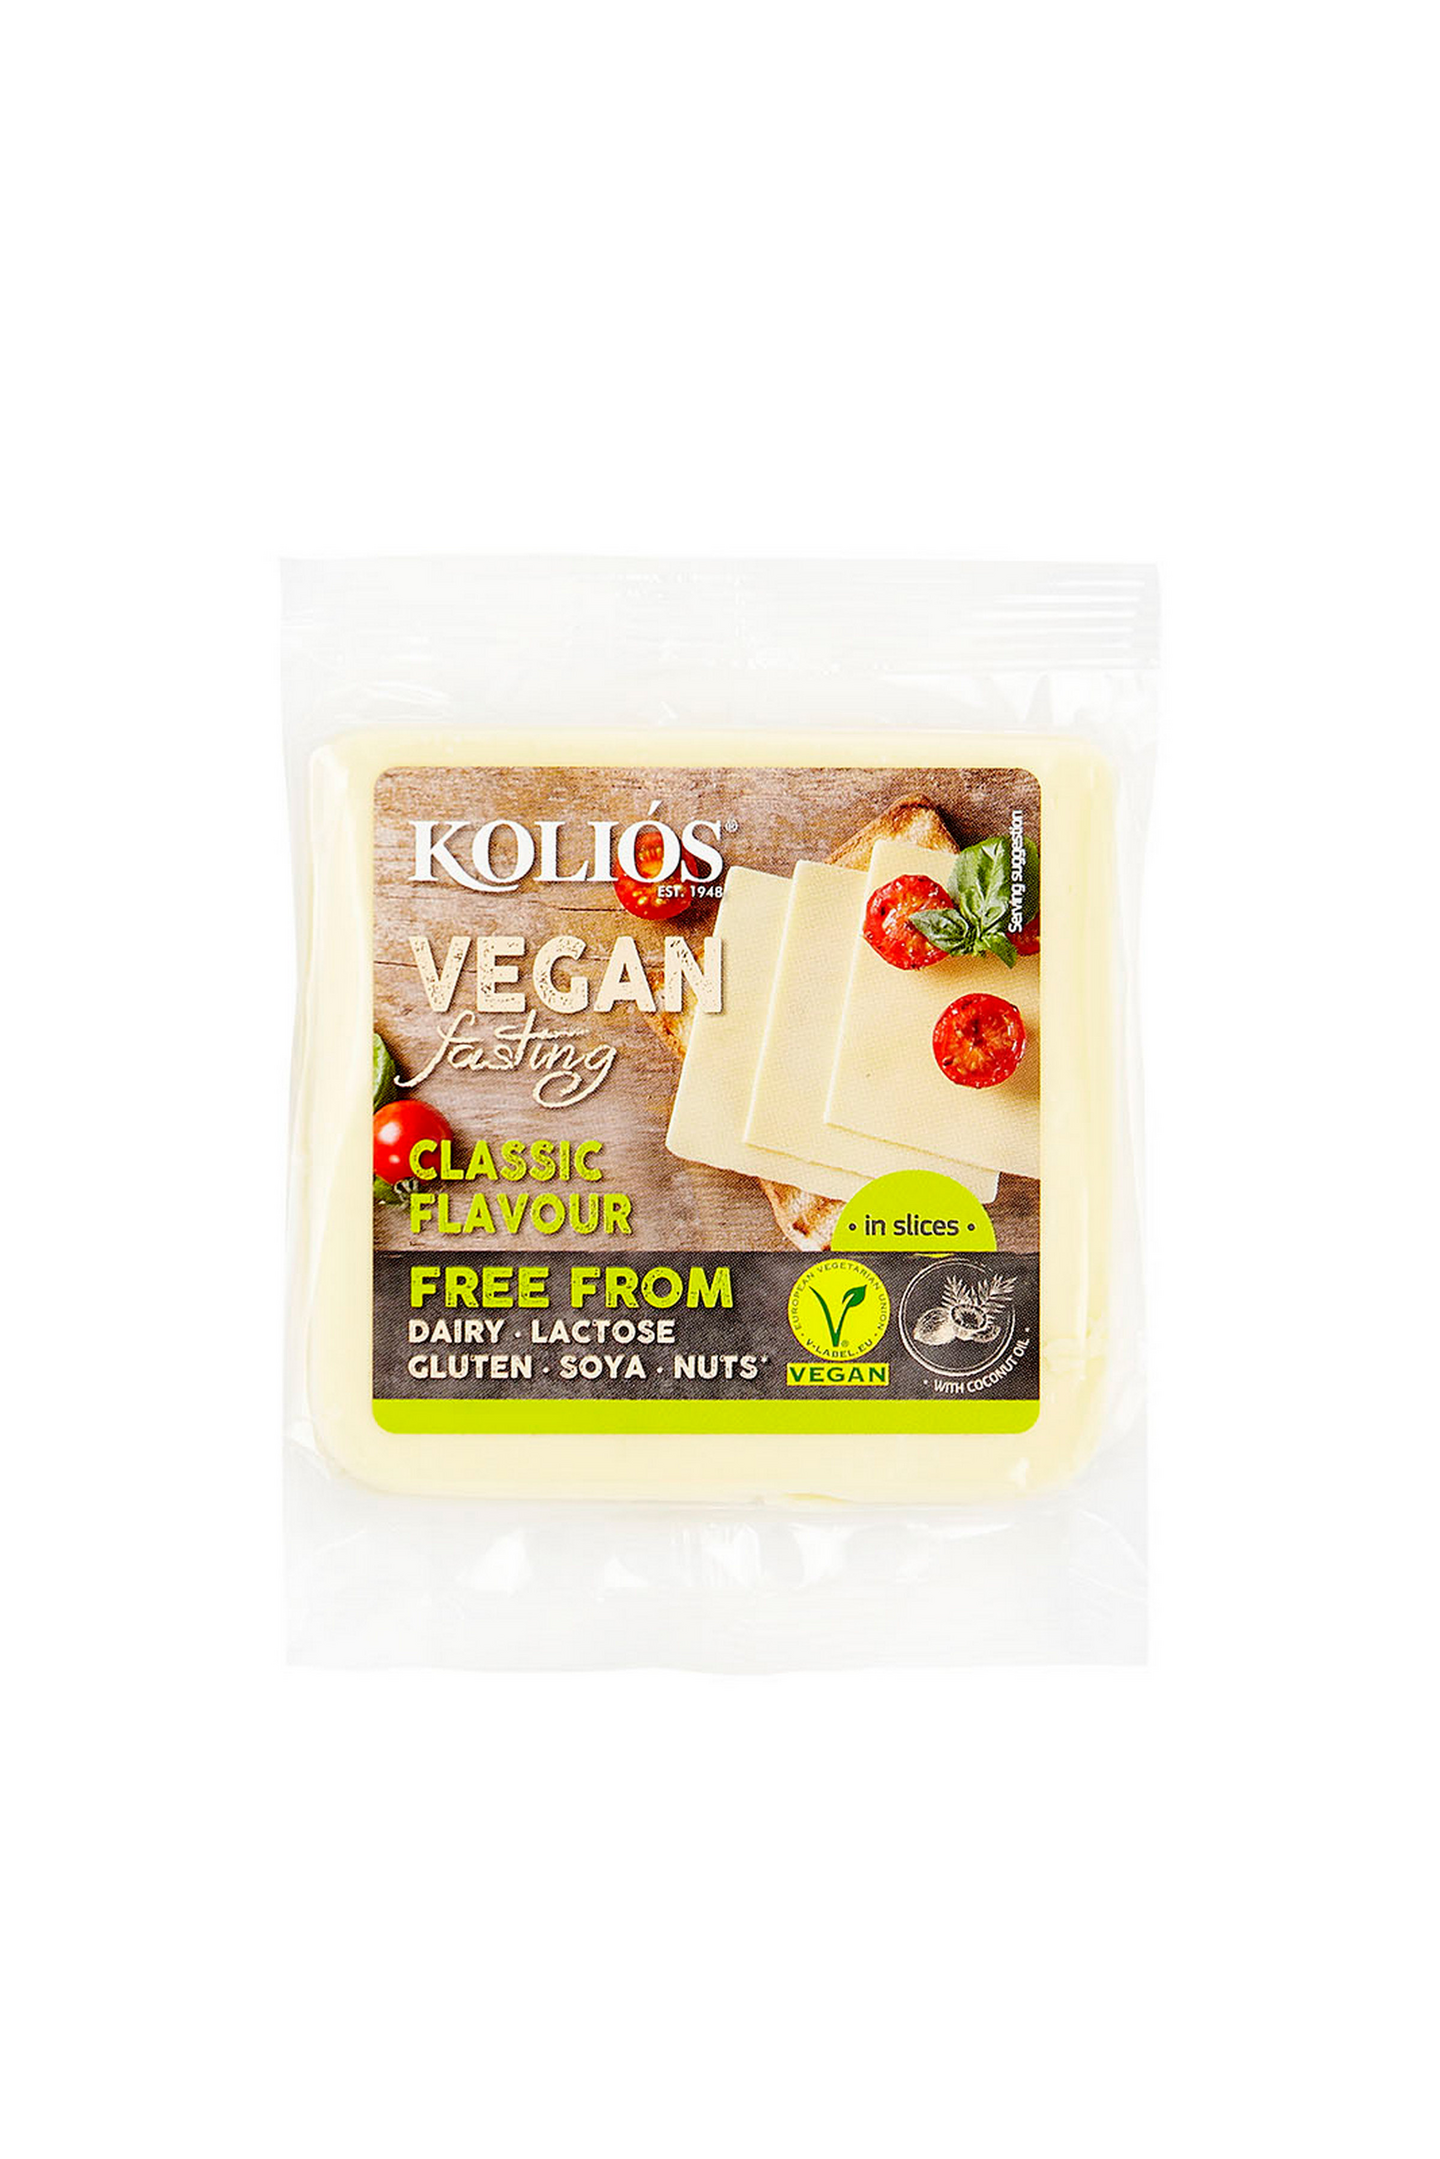 Kolios vegan viipale kasviperäinen juustovaihtoehto 200g classic